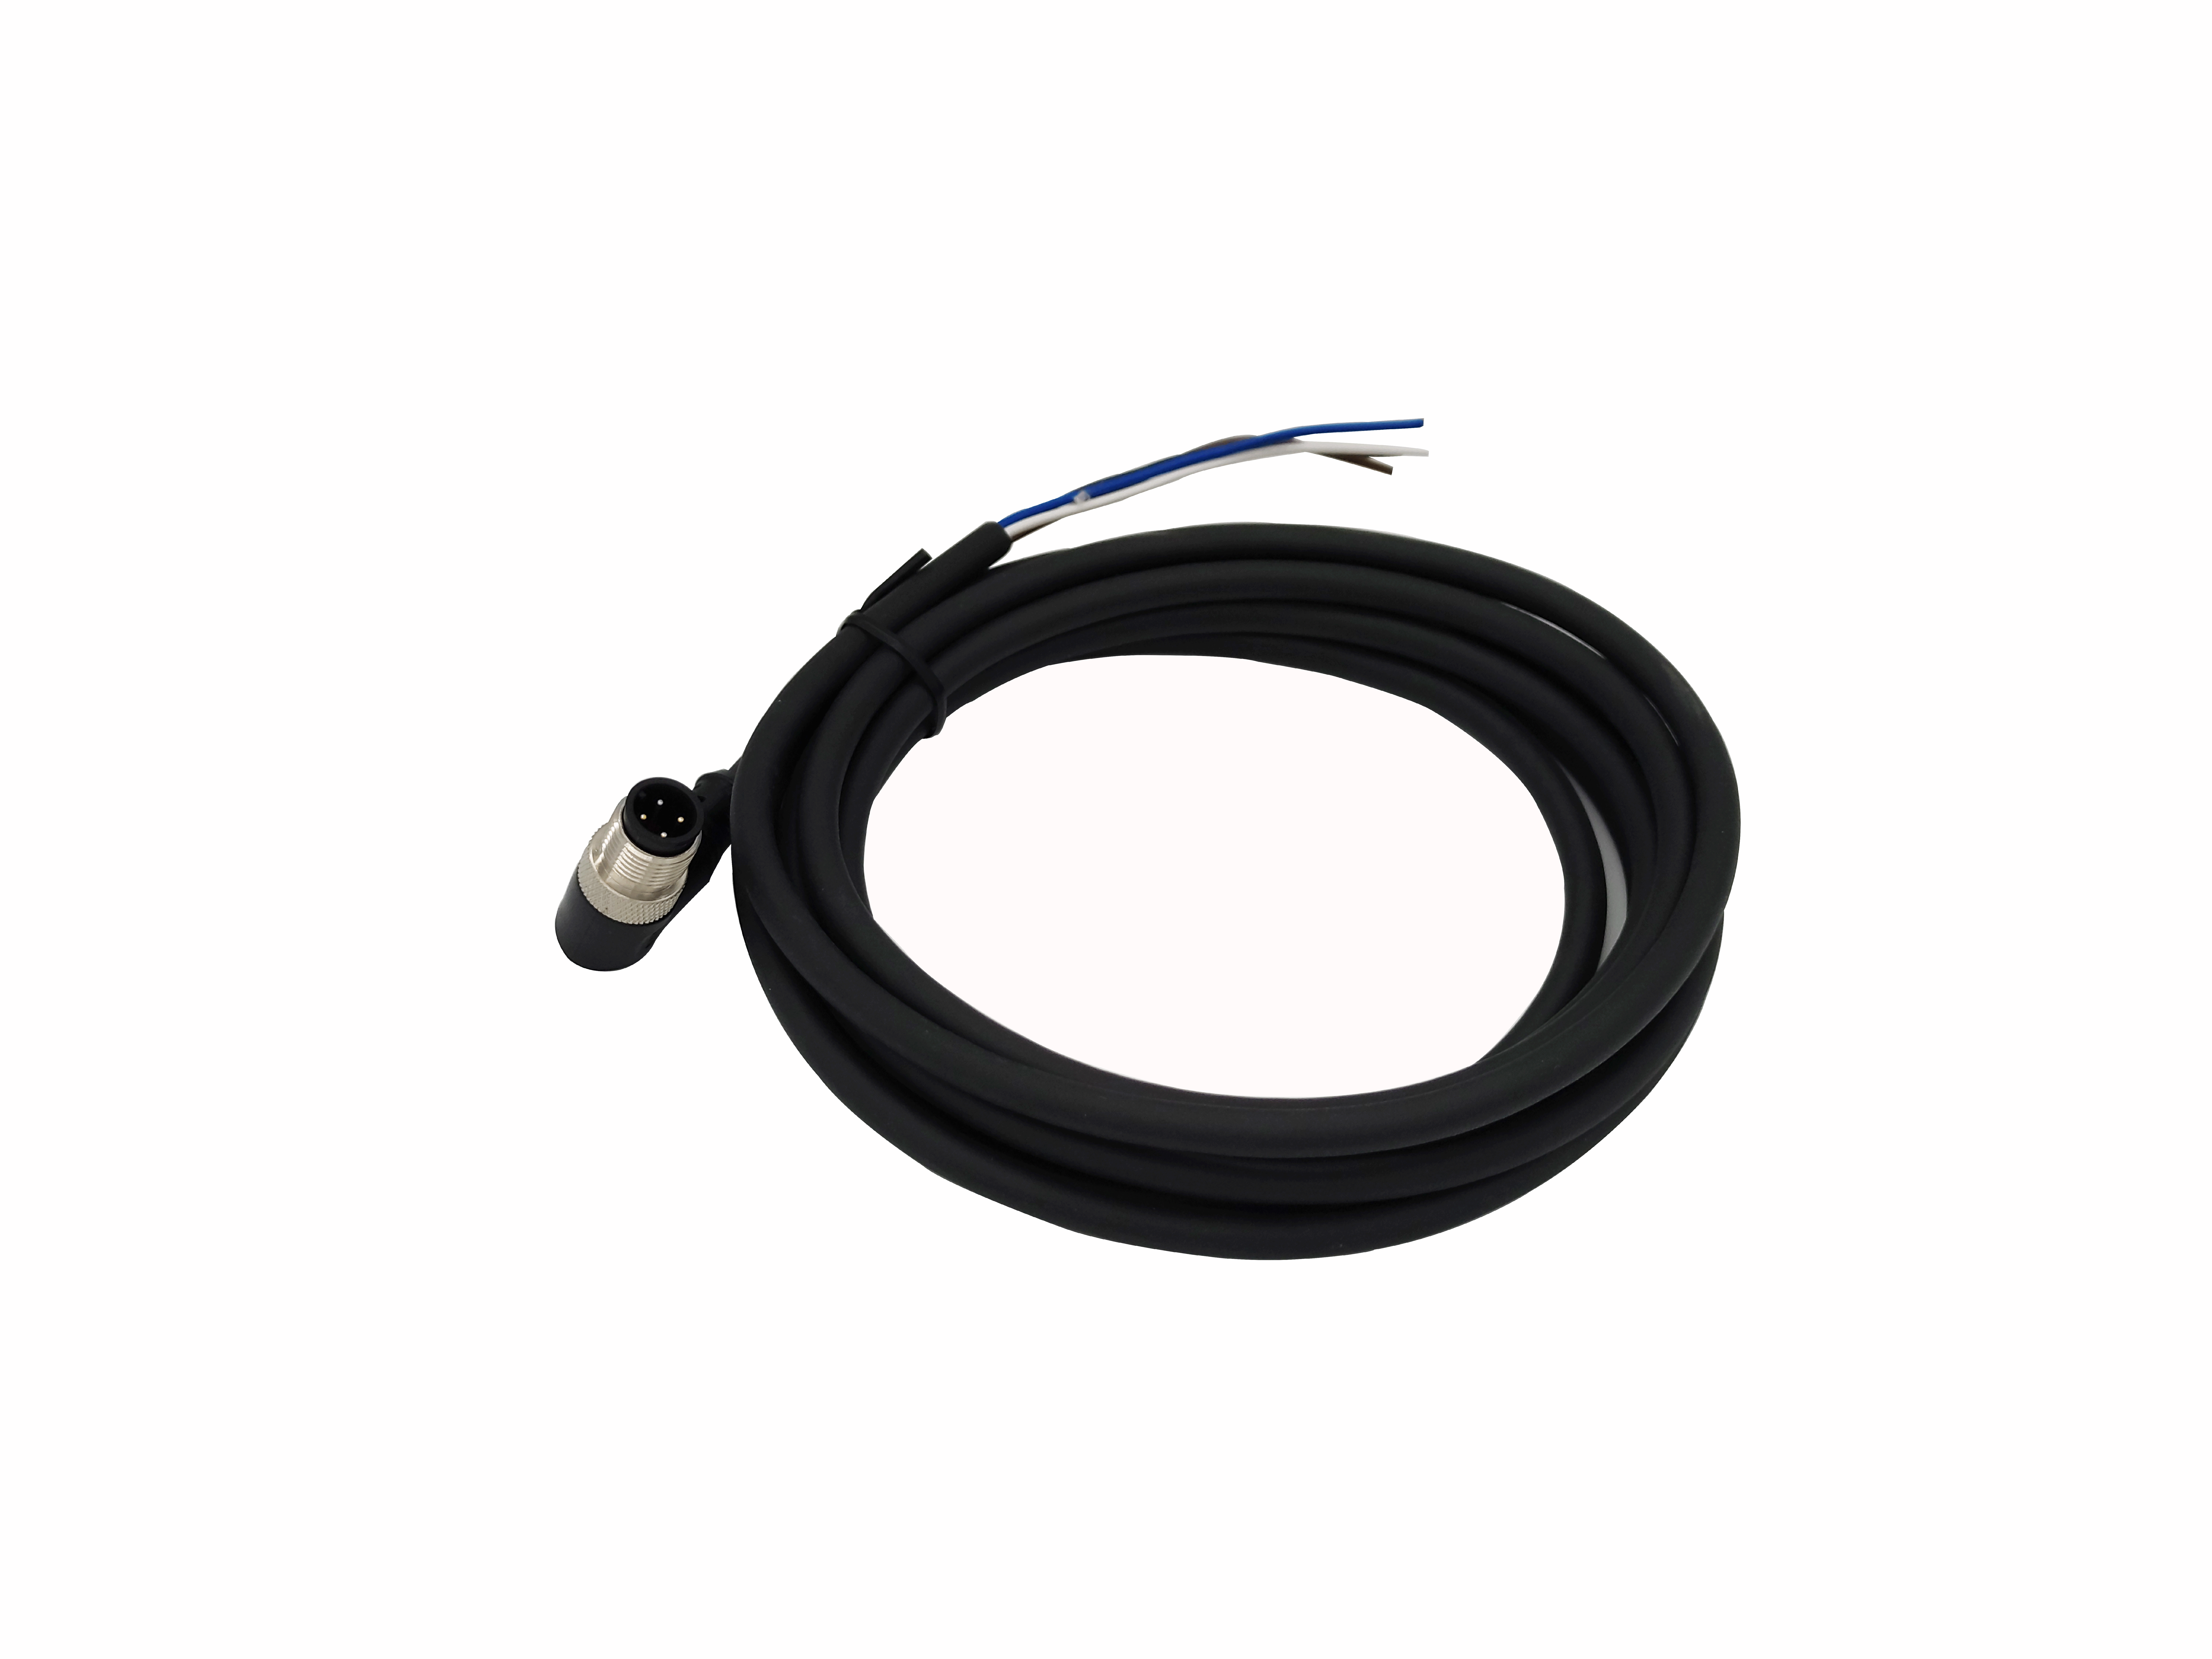 M12四芯连接器线缆组件